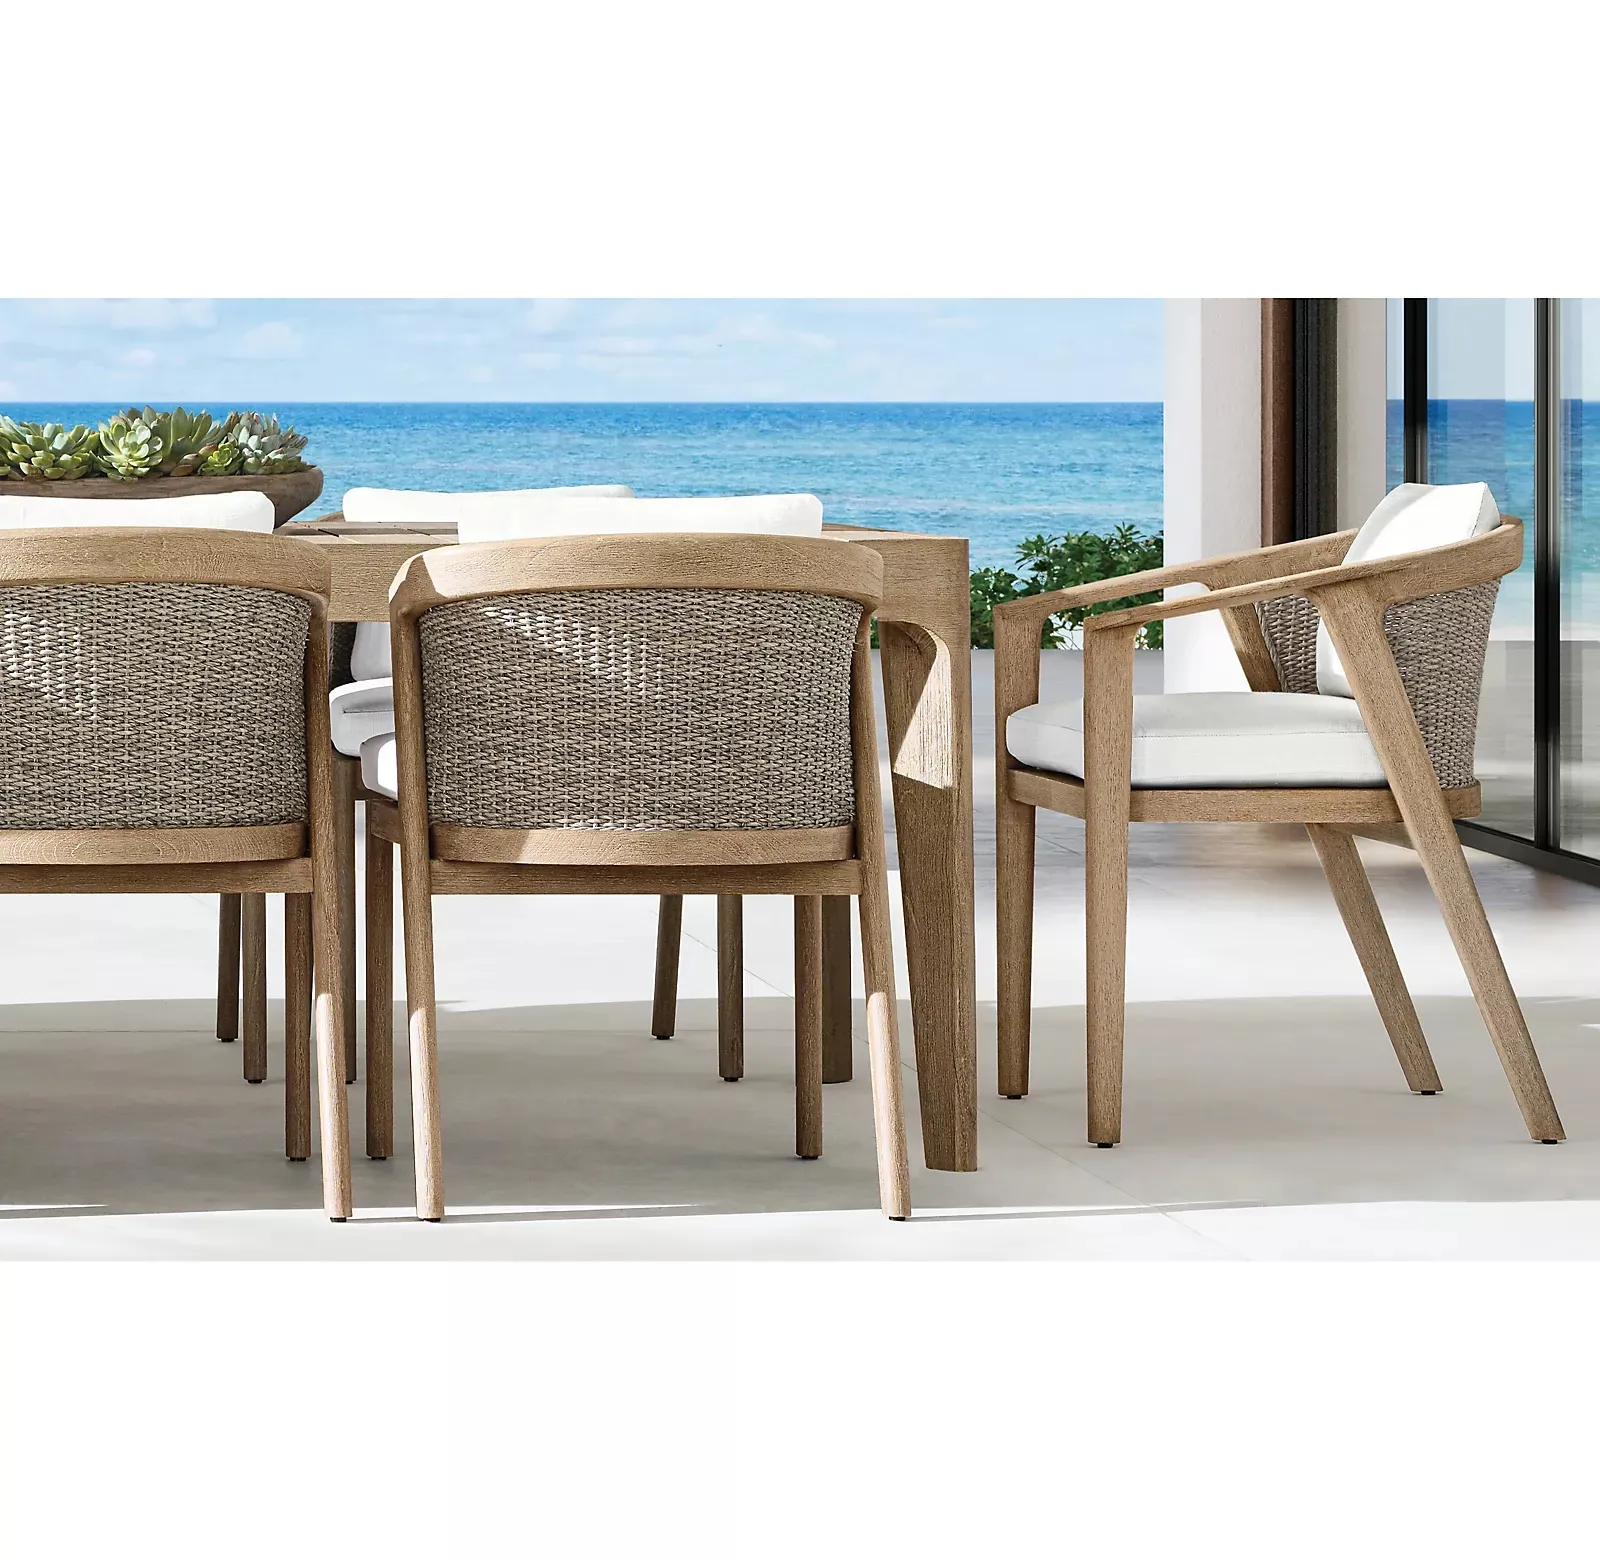 عالية الجودة فناء الفناء مجموعة حديقة الطعام الحديثة الخوص خشب الساج كرسي للاستعمال في المناطق الخارجية والجدول